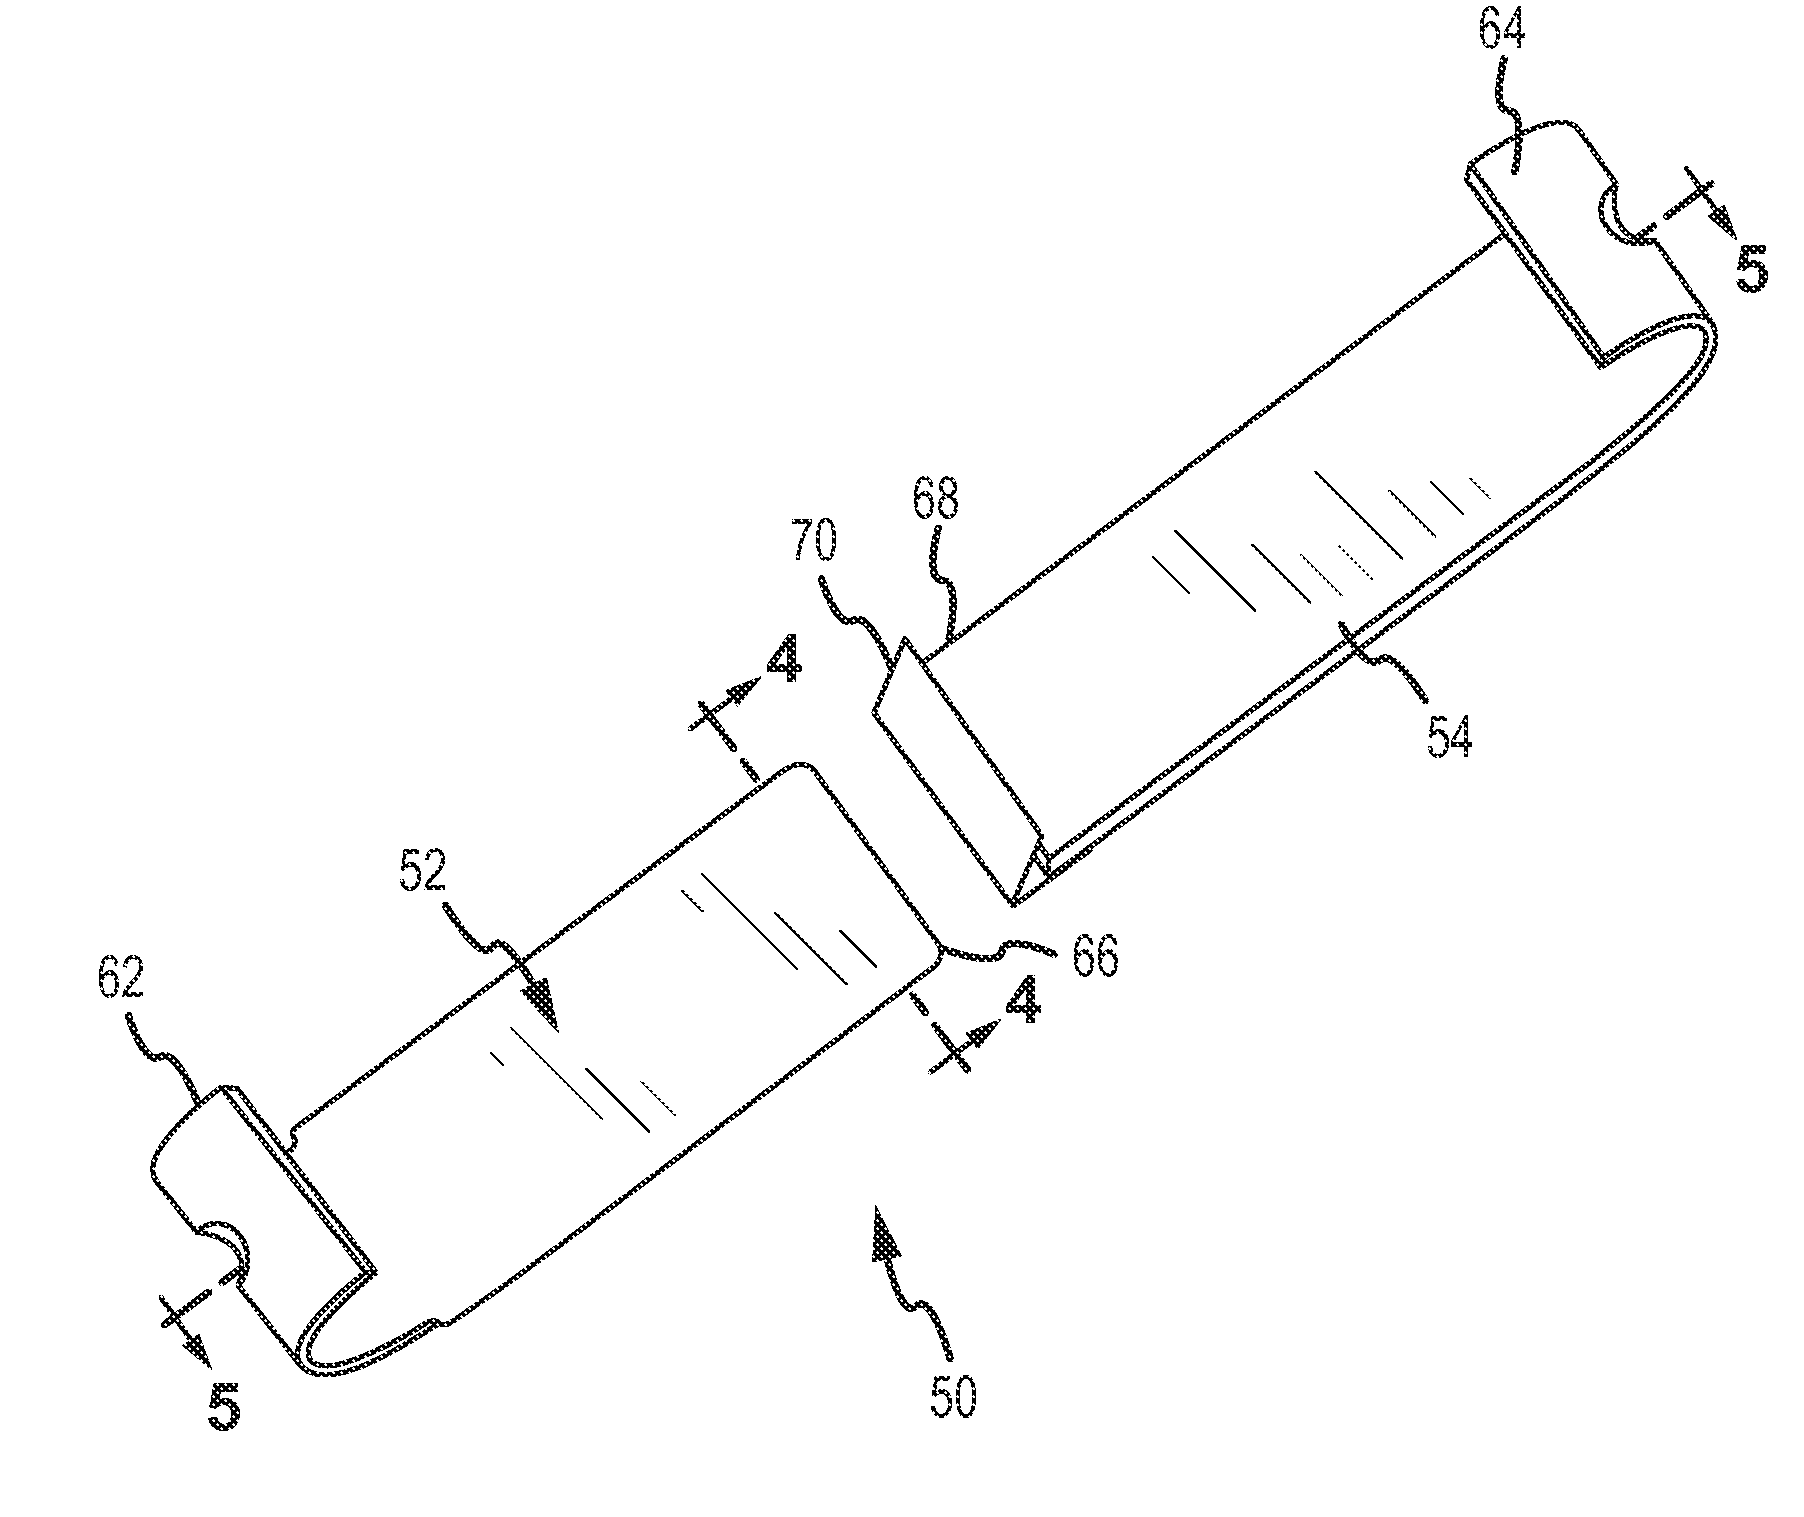 Railroad signal line attachment clip